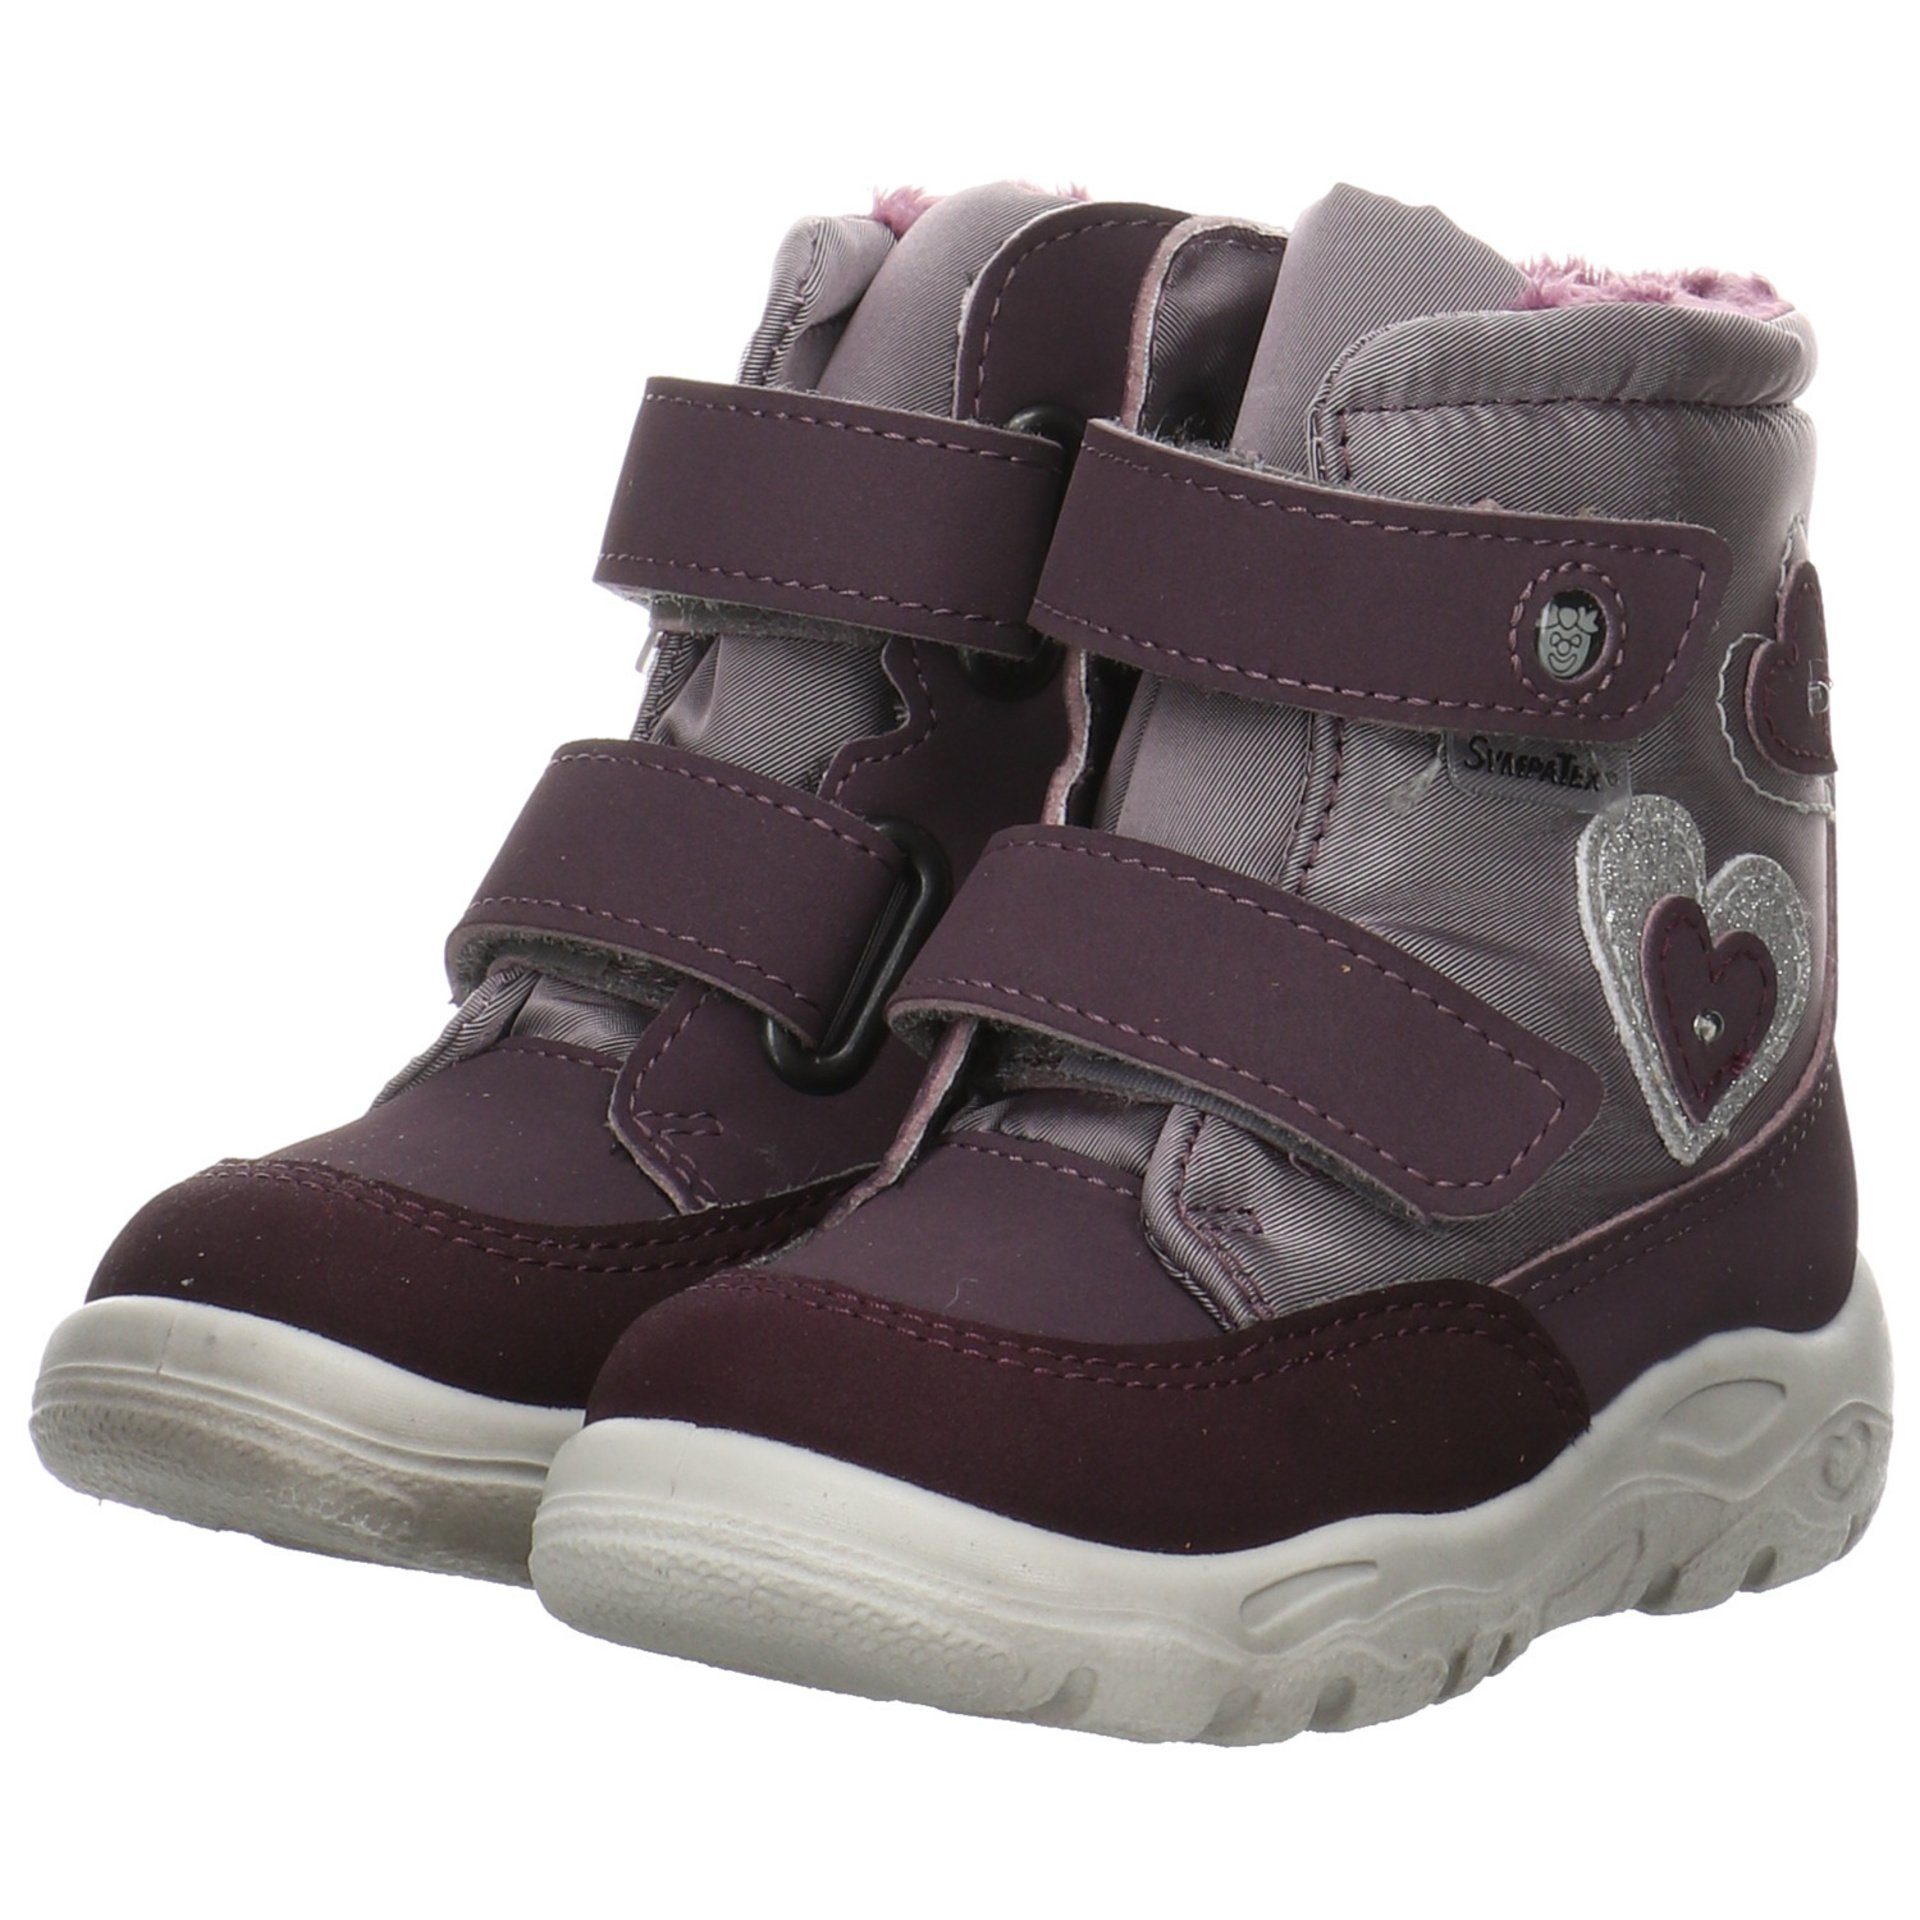 Baby Krabbelschuhe Maddi Boots dolcetto/purple Synthetikkombination Pepino Ricosta Lauflernschuhe (340) Lauflernschuh